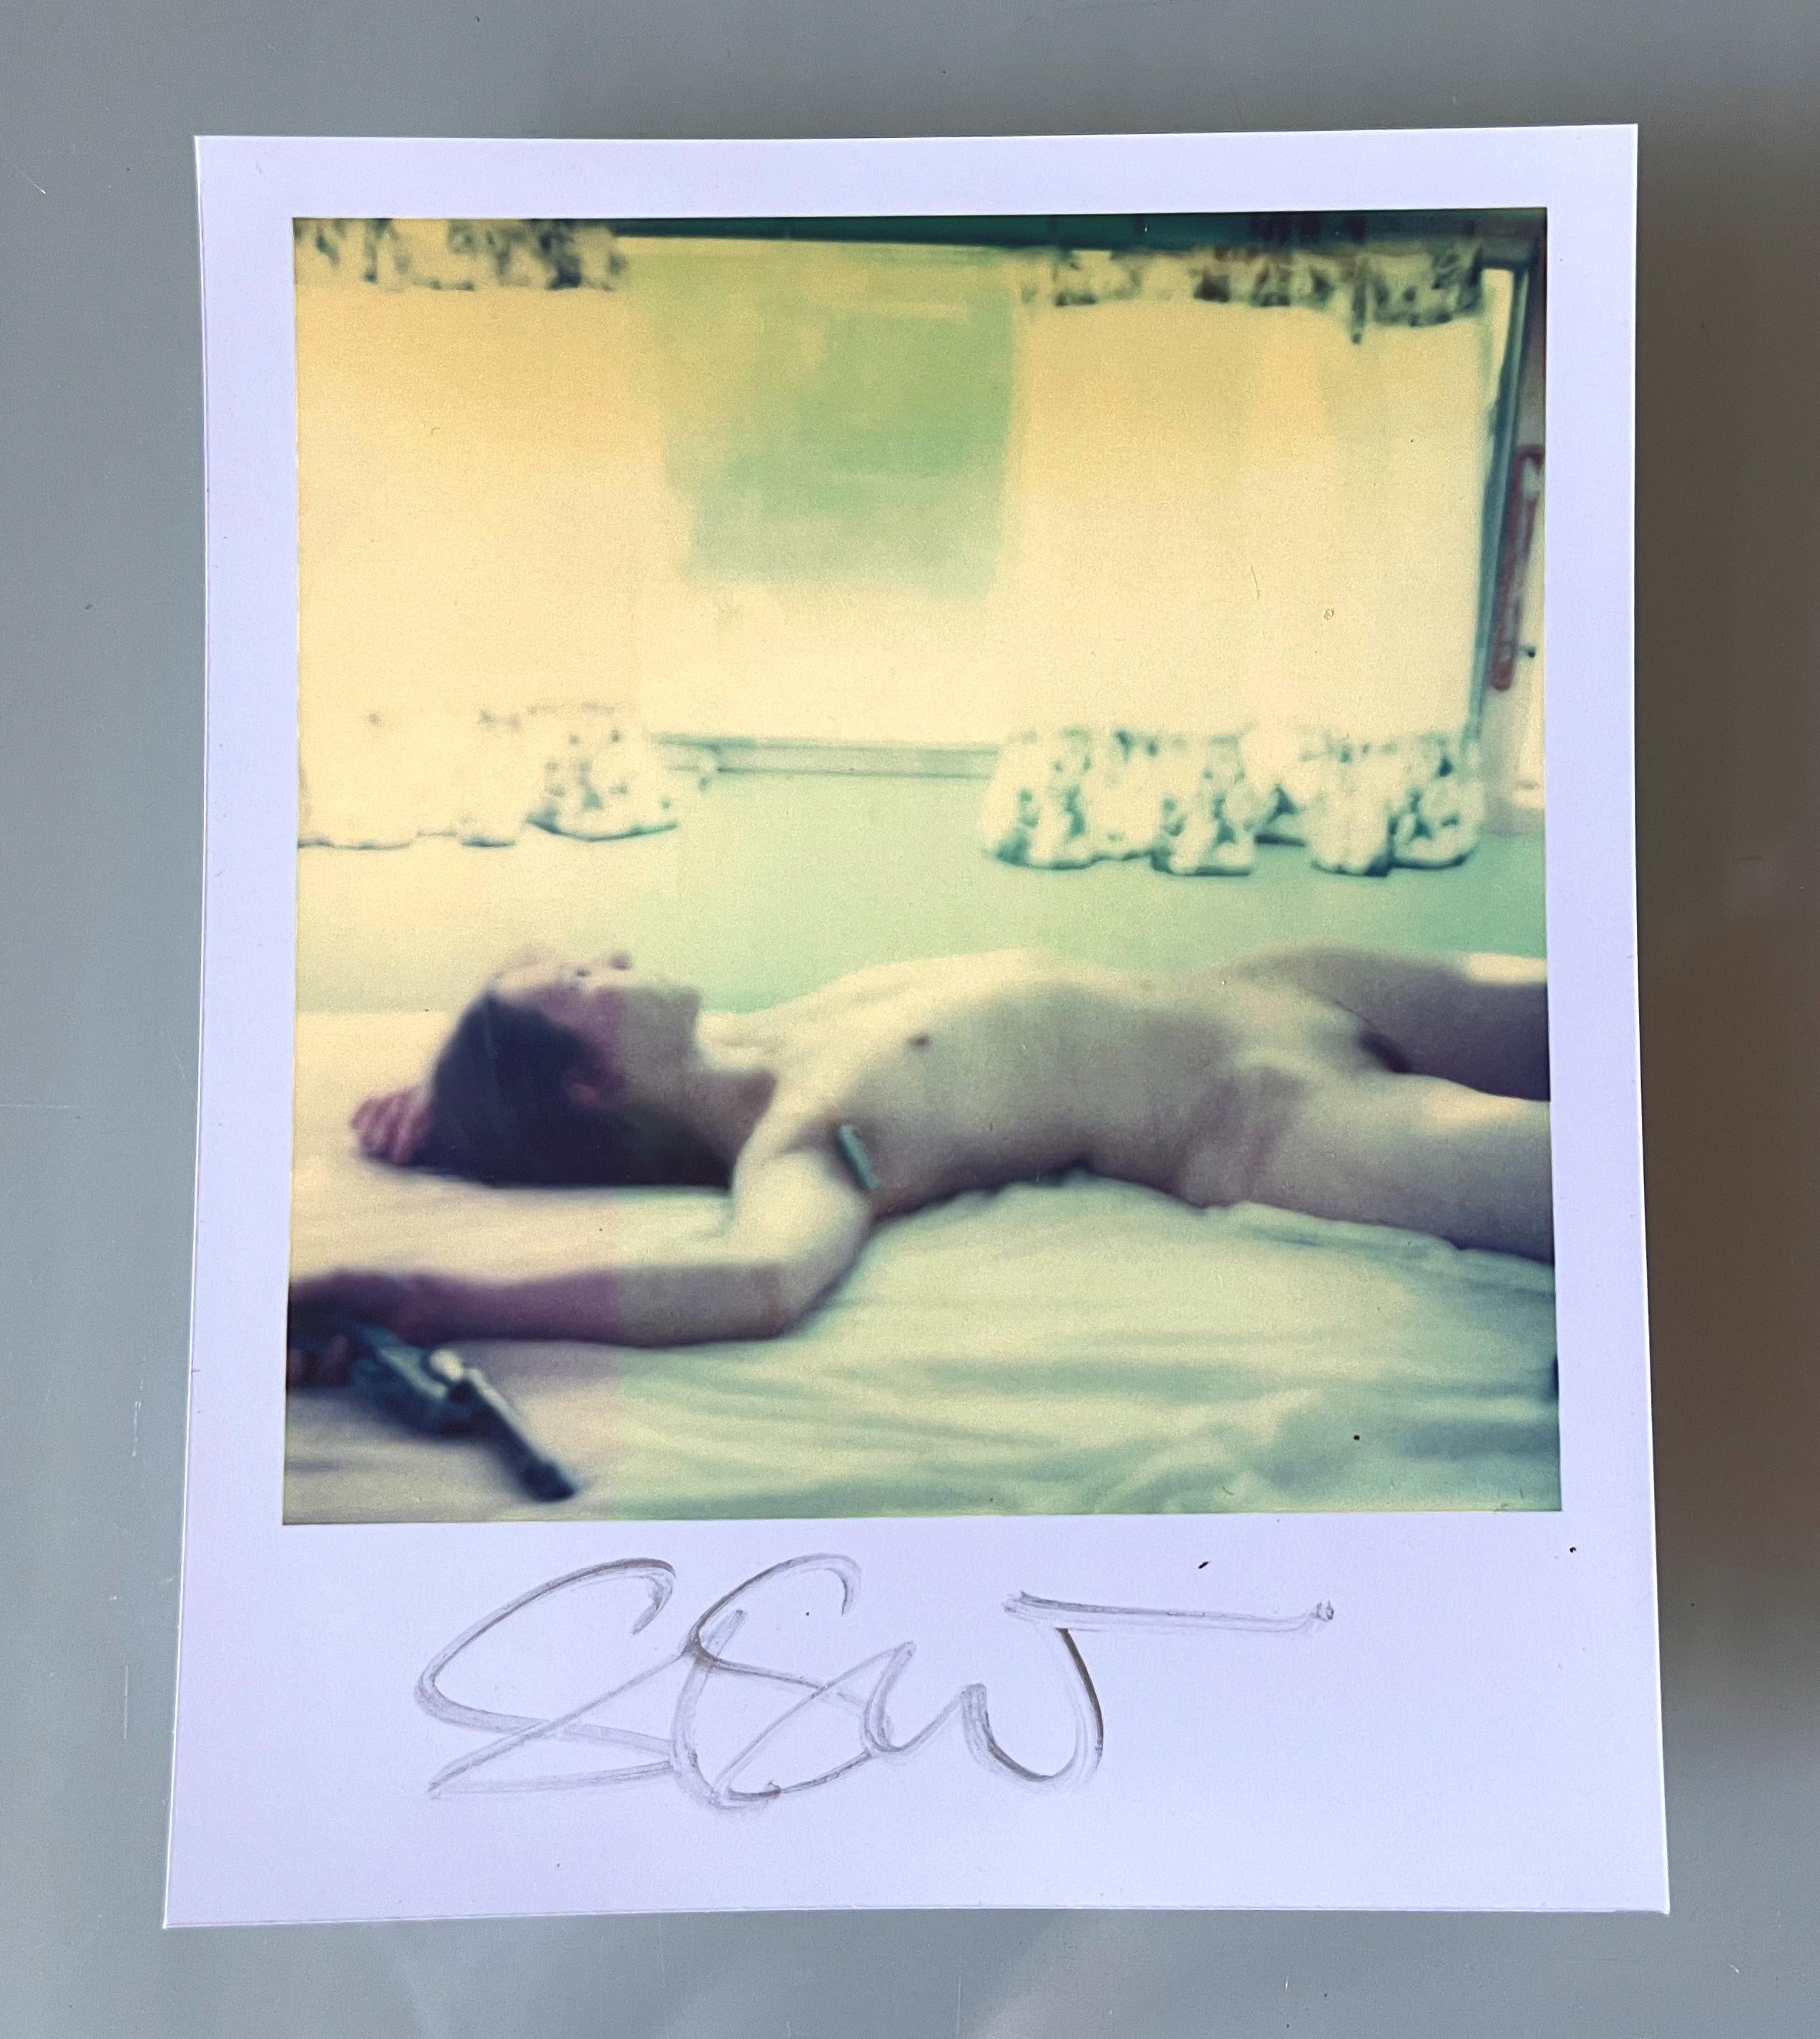 Stefanie Schneider Polaroid-sized unlimited Mini 'Waiting' (Sidewinder) - 2005 - 

signé au recto, non monté. 
1 photographie couleur d'archives basée sur le polaroïd. 

Éditions ouvertes au format polaroïd 1999-2022
10,7 x 8,8 cm (image 7,9 x 7,7